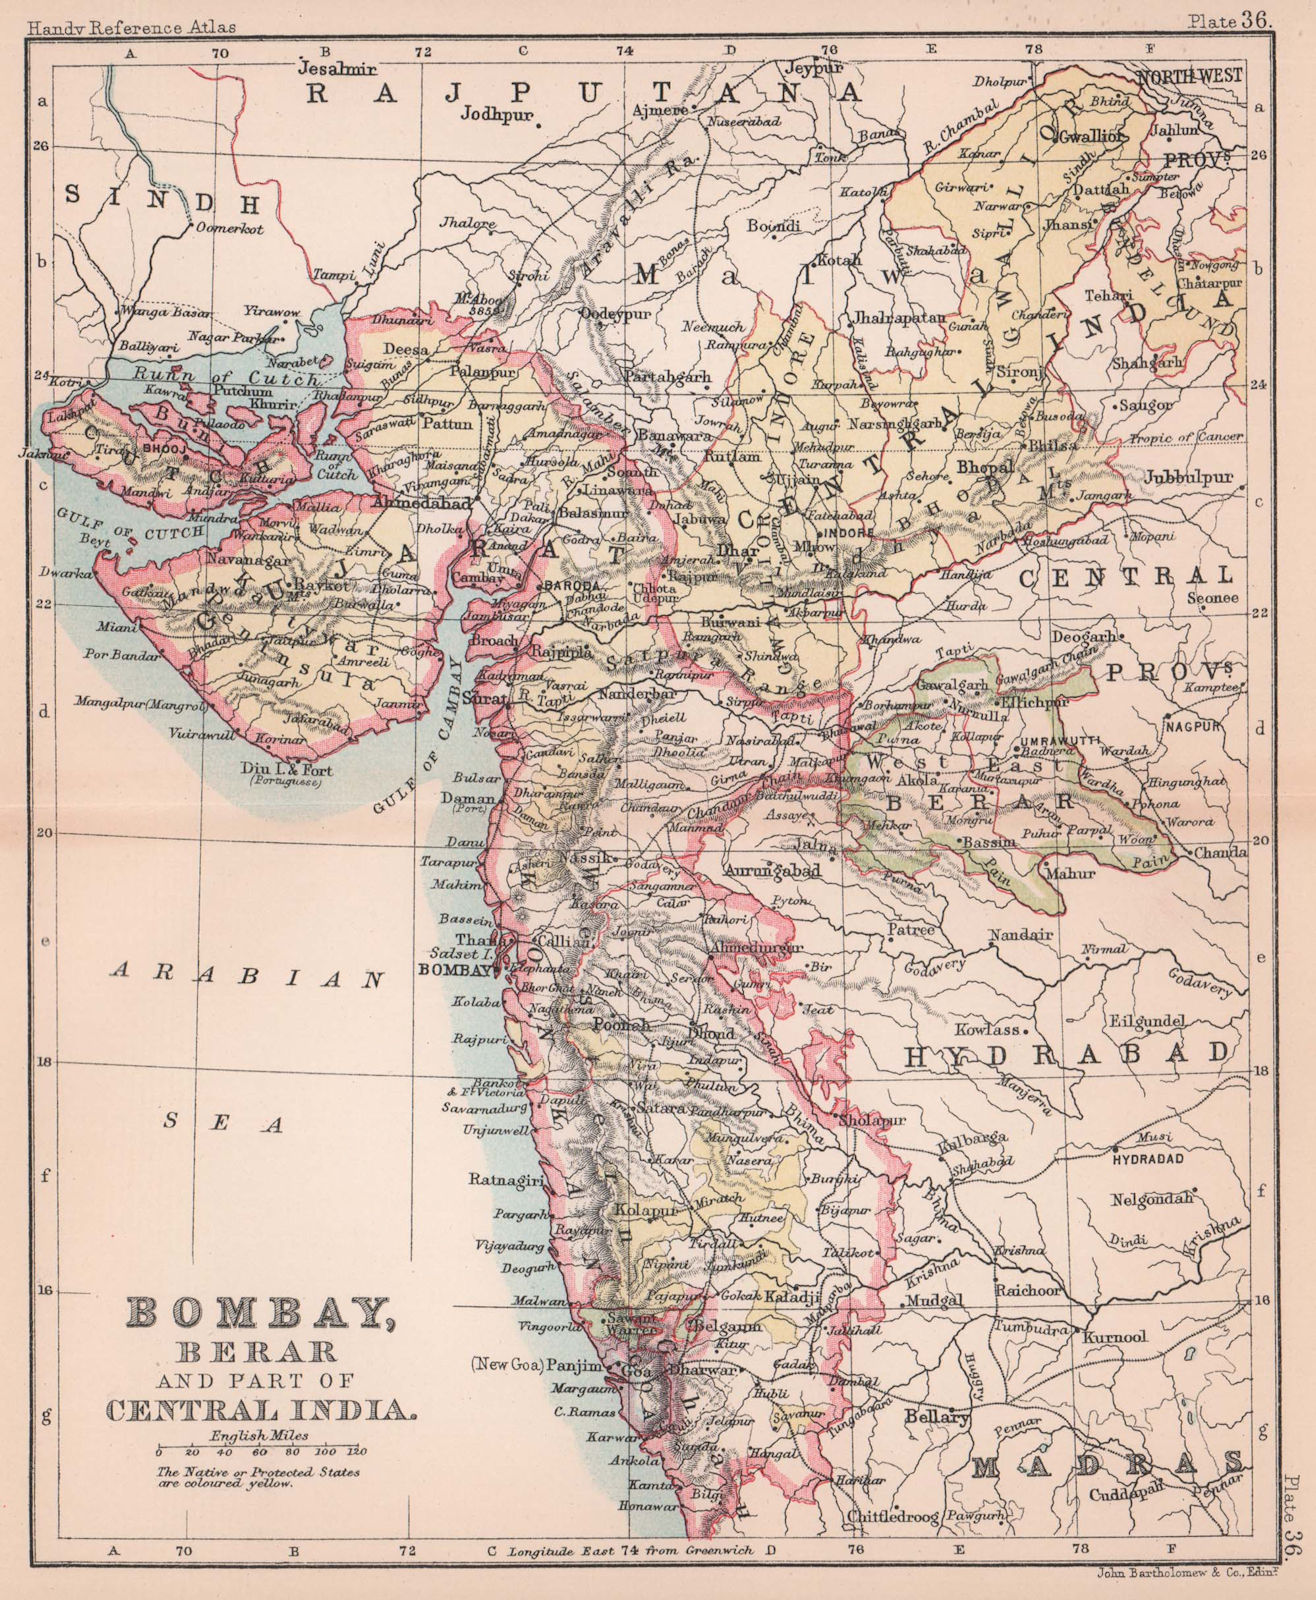 British India West. Bombay, Berar & part of Central India. BARTHOLOMEW 1893 map